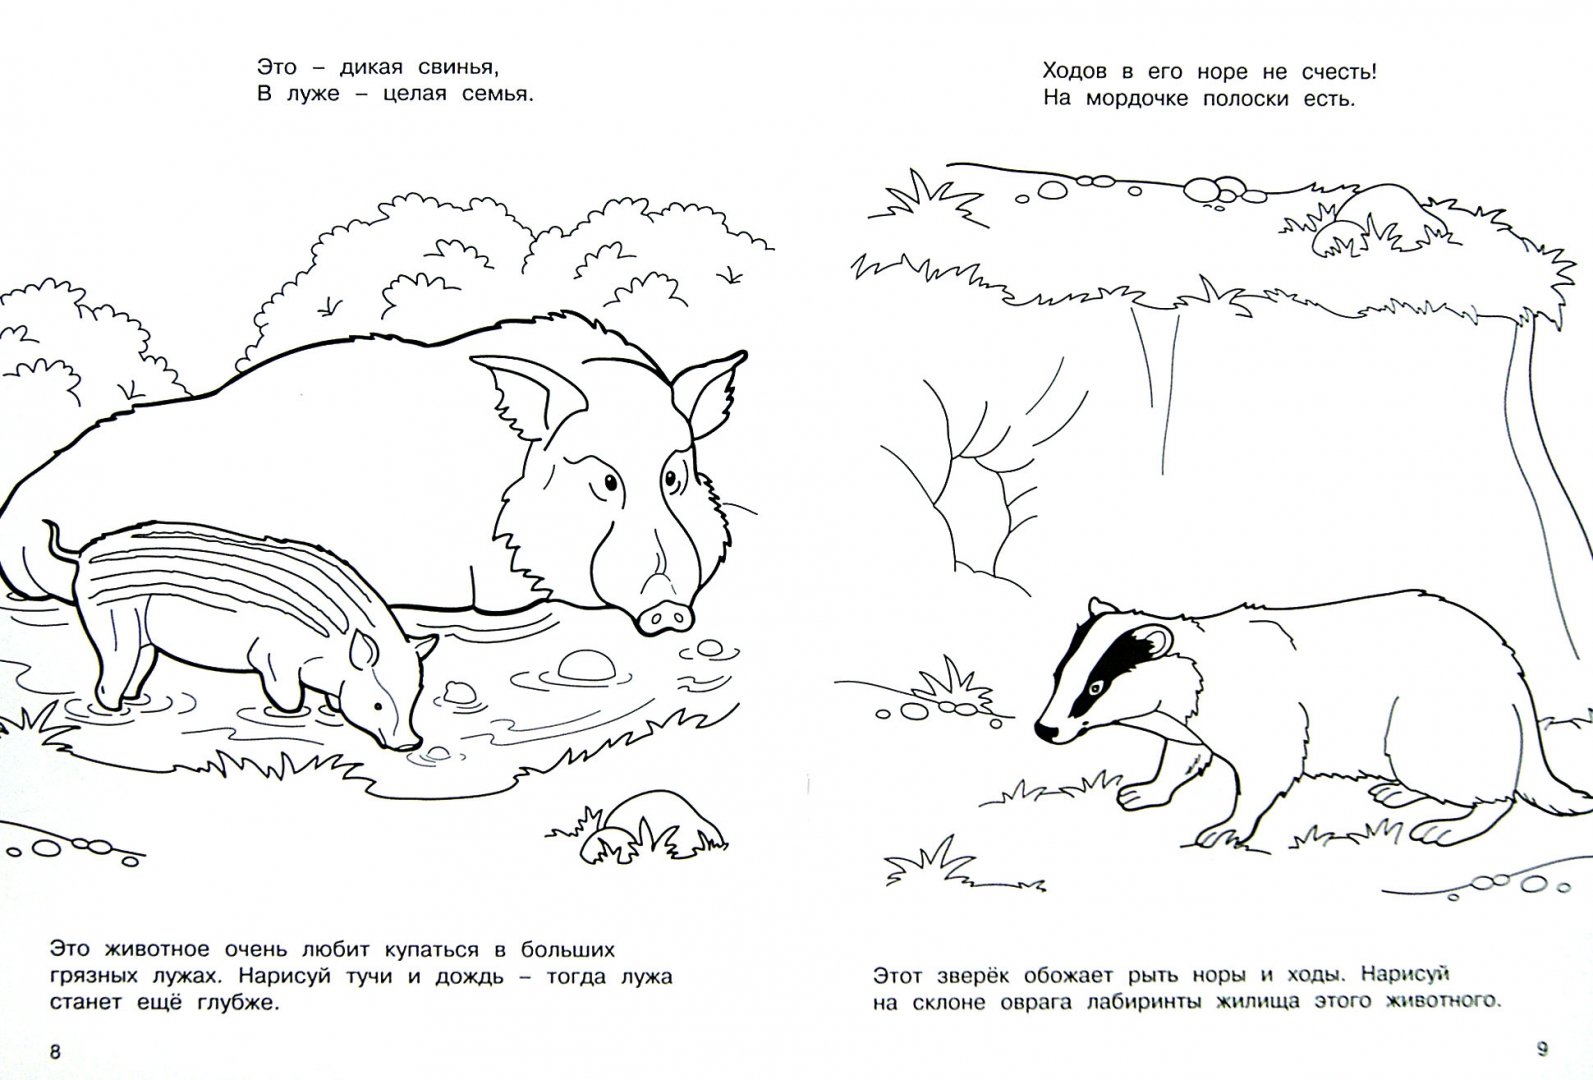 Иллюстрация 1 из 8 для Лесные жители - М. Земнов | Лабиринт - книги. Источник: Лабиринт